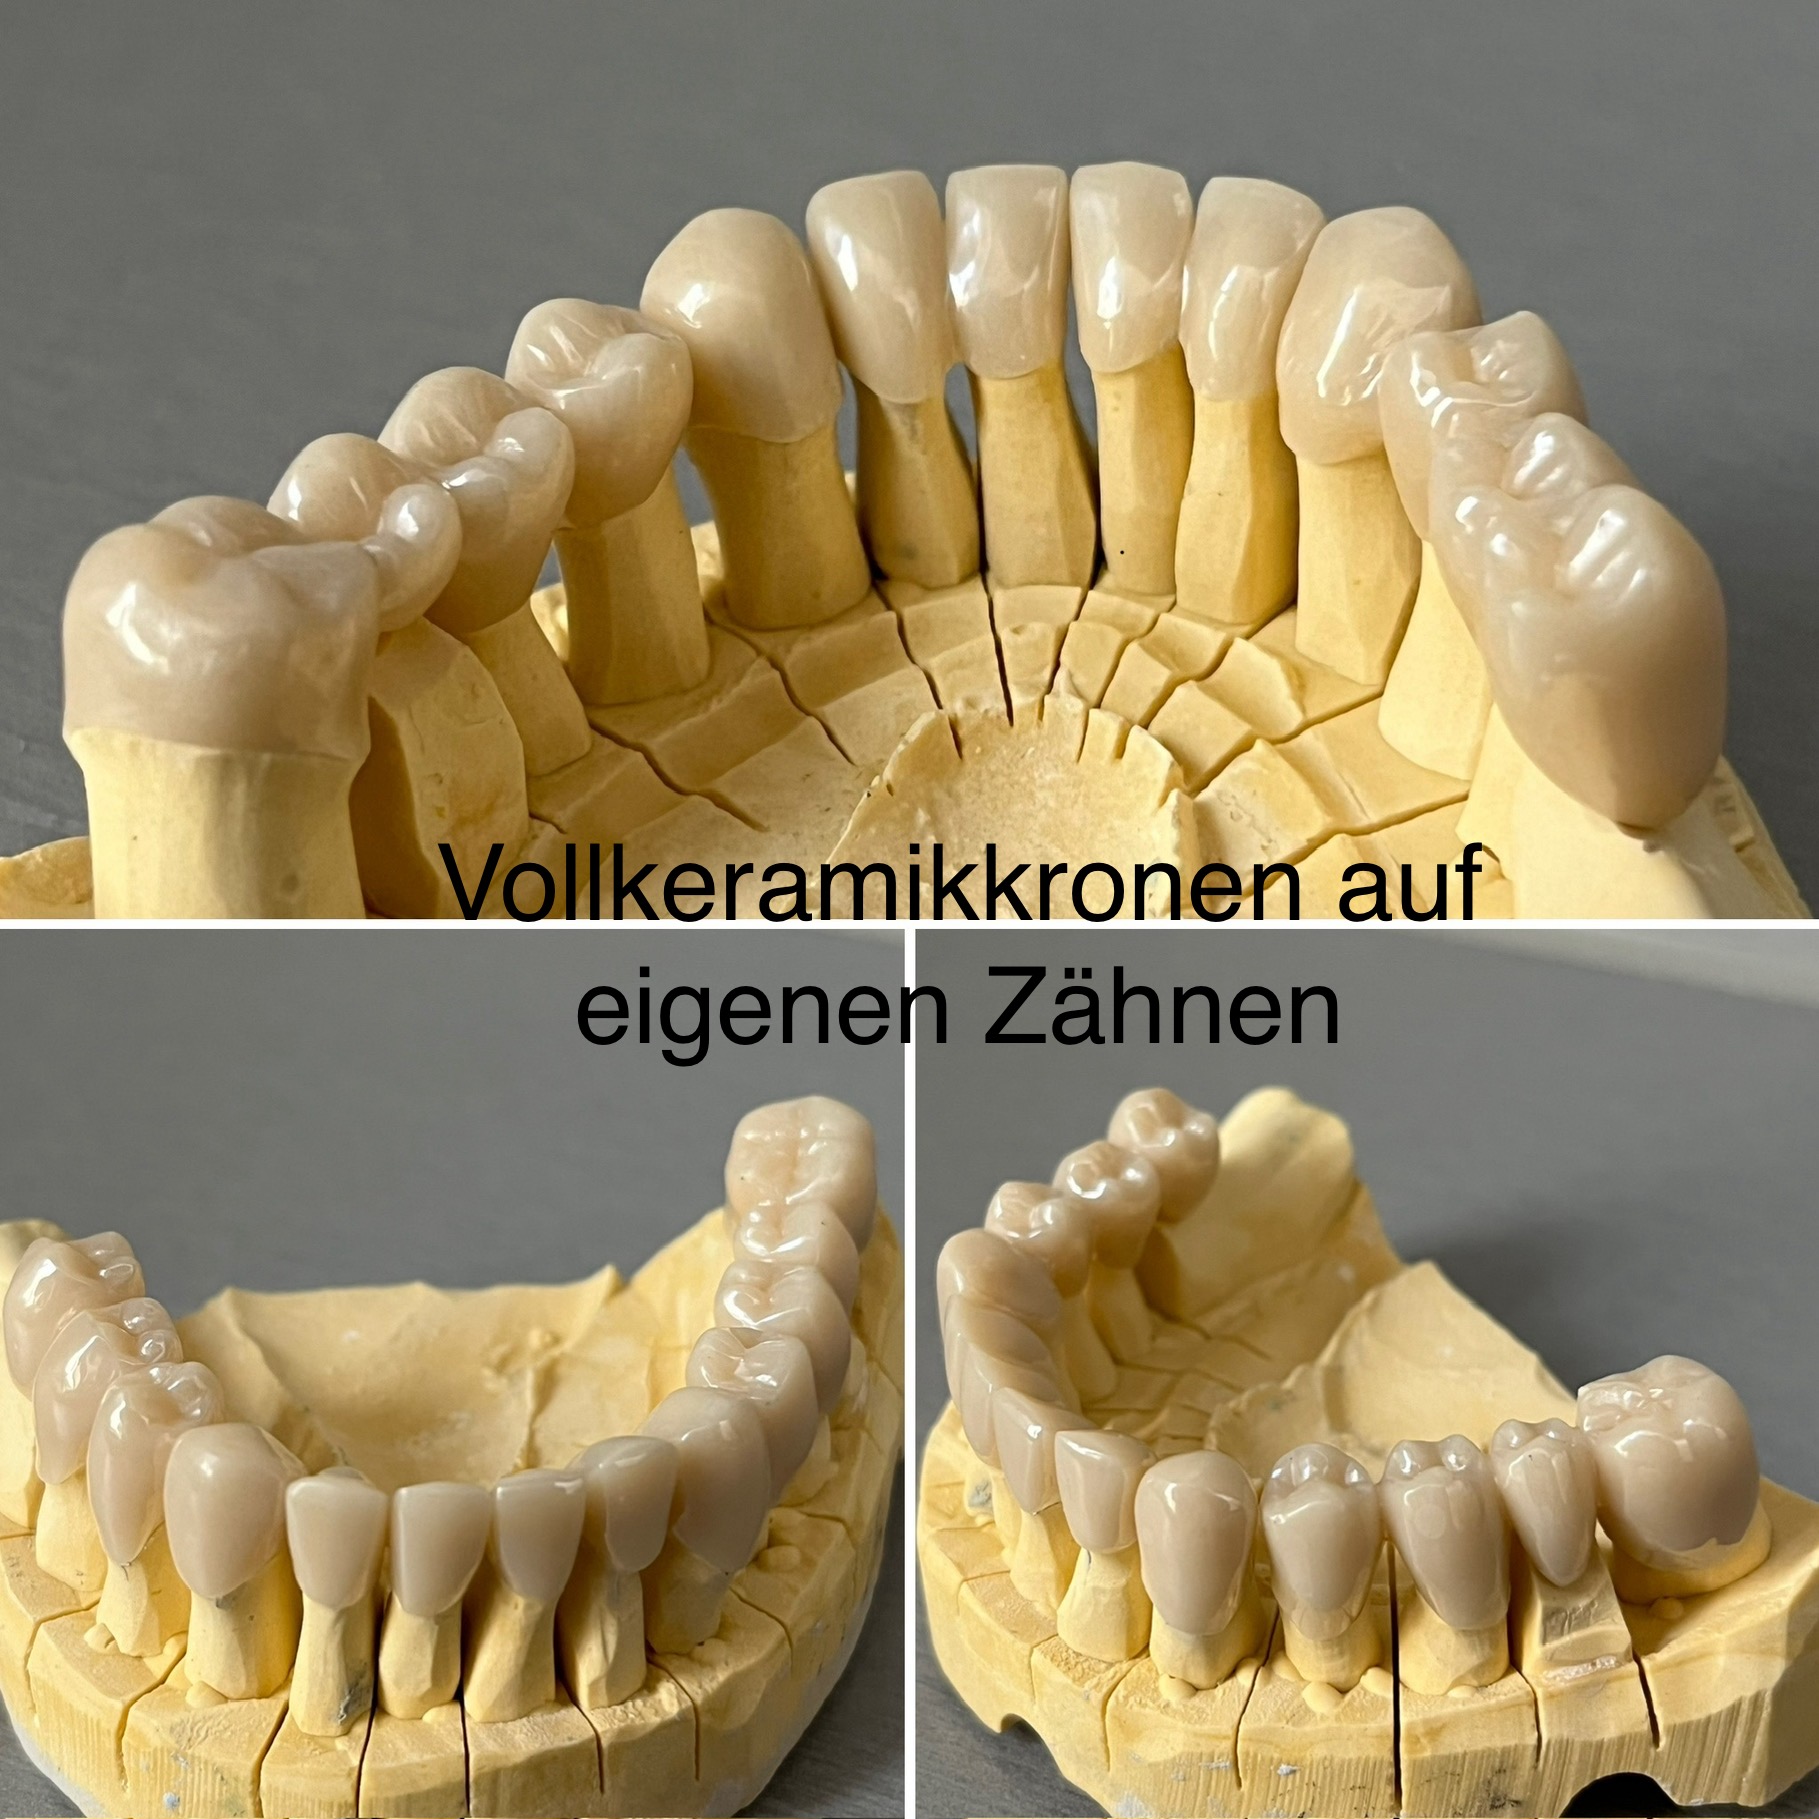 Vollkeramikkronen auf eigenen Zähnen